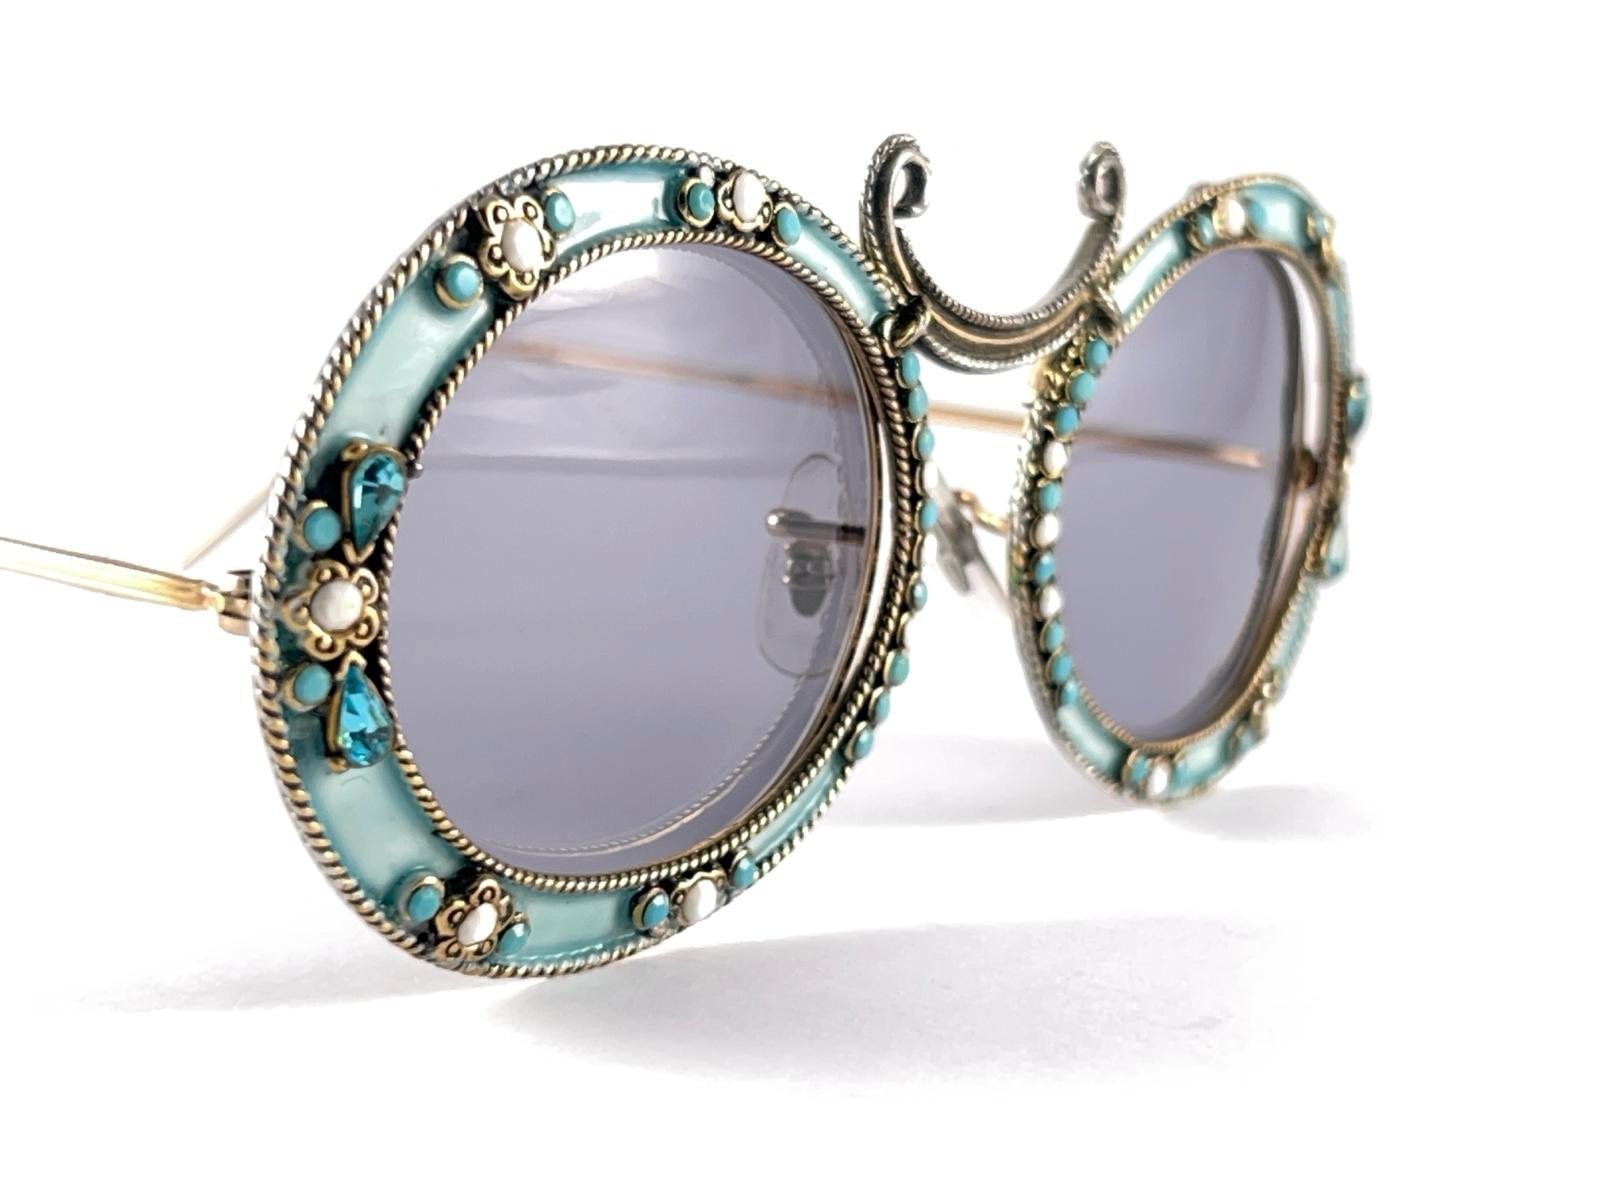 Sehr seltene Sonnenbrille von Christian Dior aus den 1960er Jahren von Tura.  

Dies ist ein seltenes Stück, nicht nur wegen seines ästhetischen Wertes, sondern auch wegen seiner Bedeutung in der Geschichte der Sonnenbrillen und der Mode.   
Zart